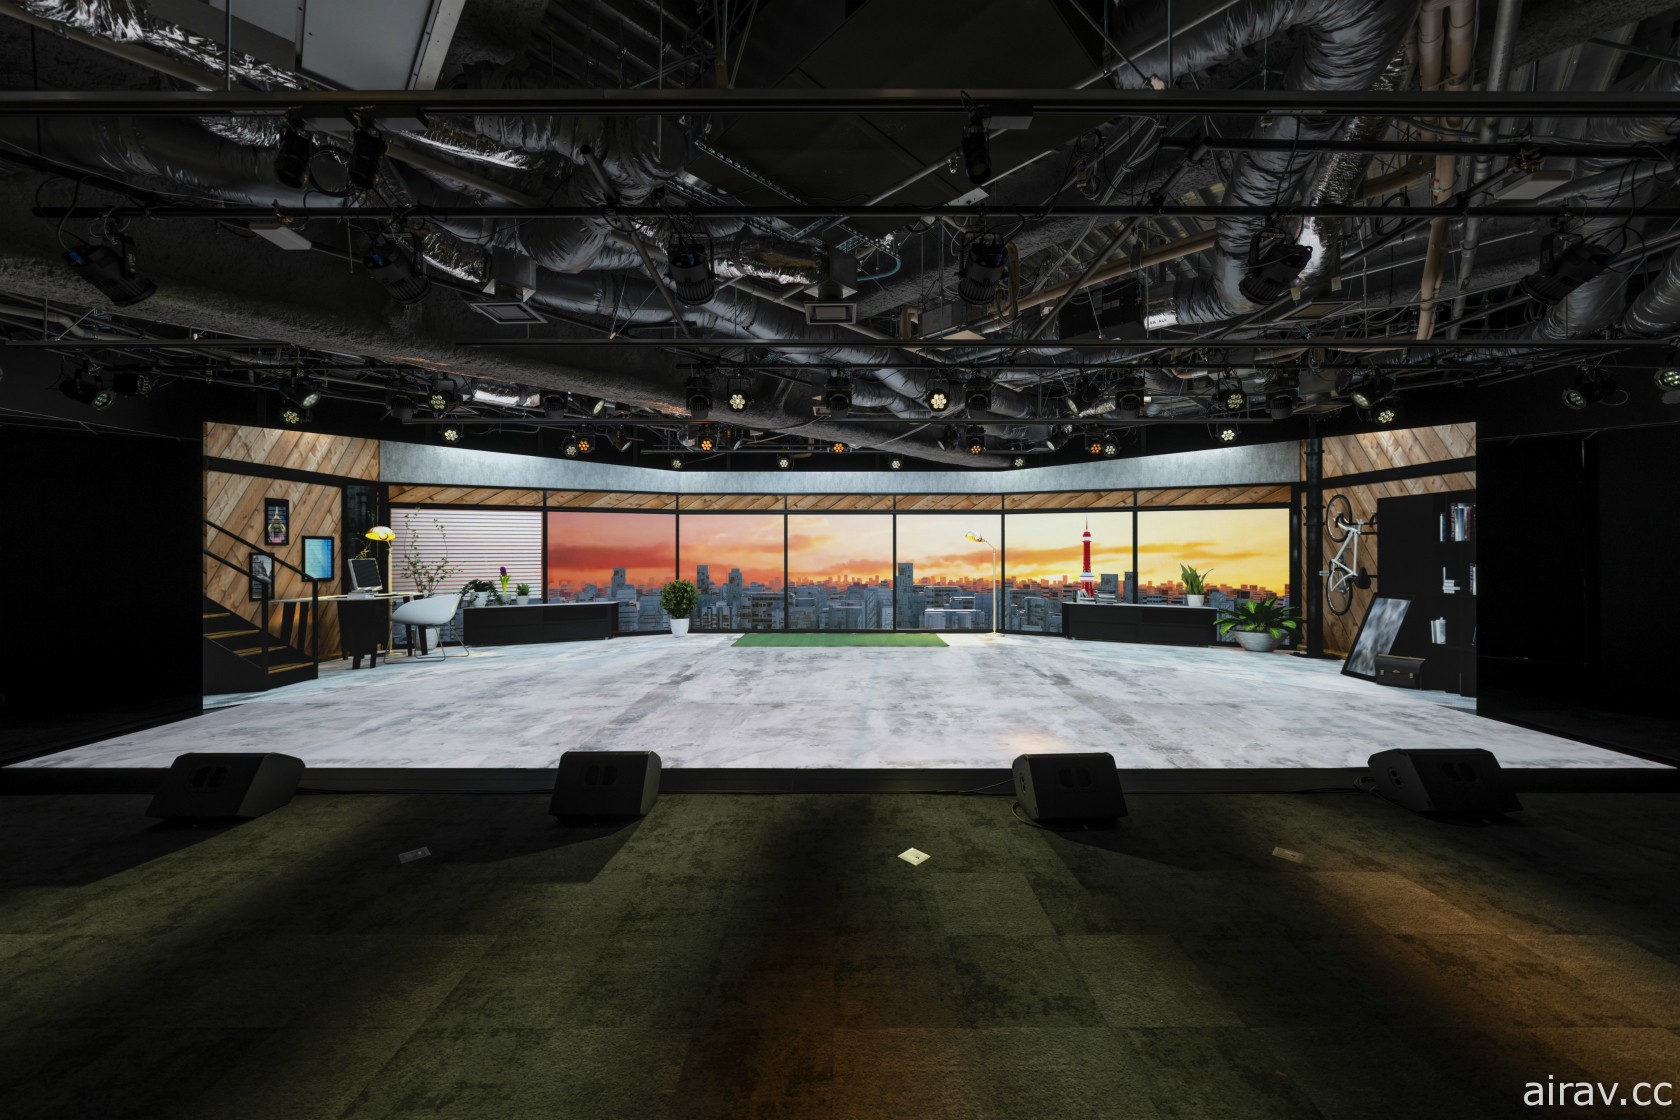 融合現實與虛擬的直播攝影棚 MIRAIKEN studio 開幕 天海春香與藝人同台共演